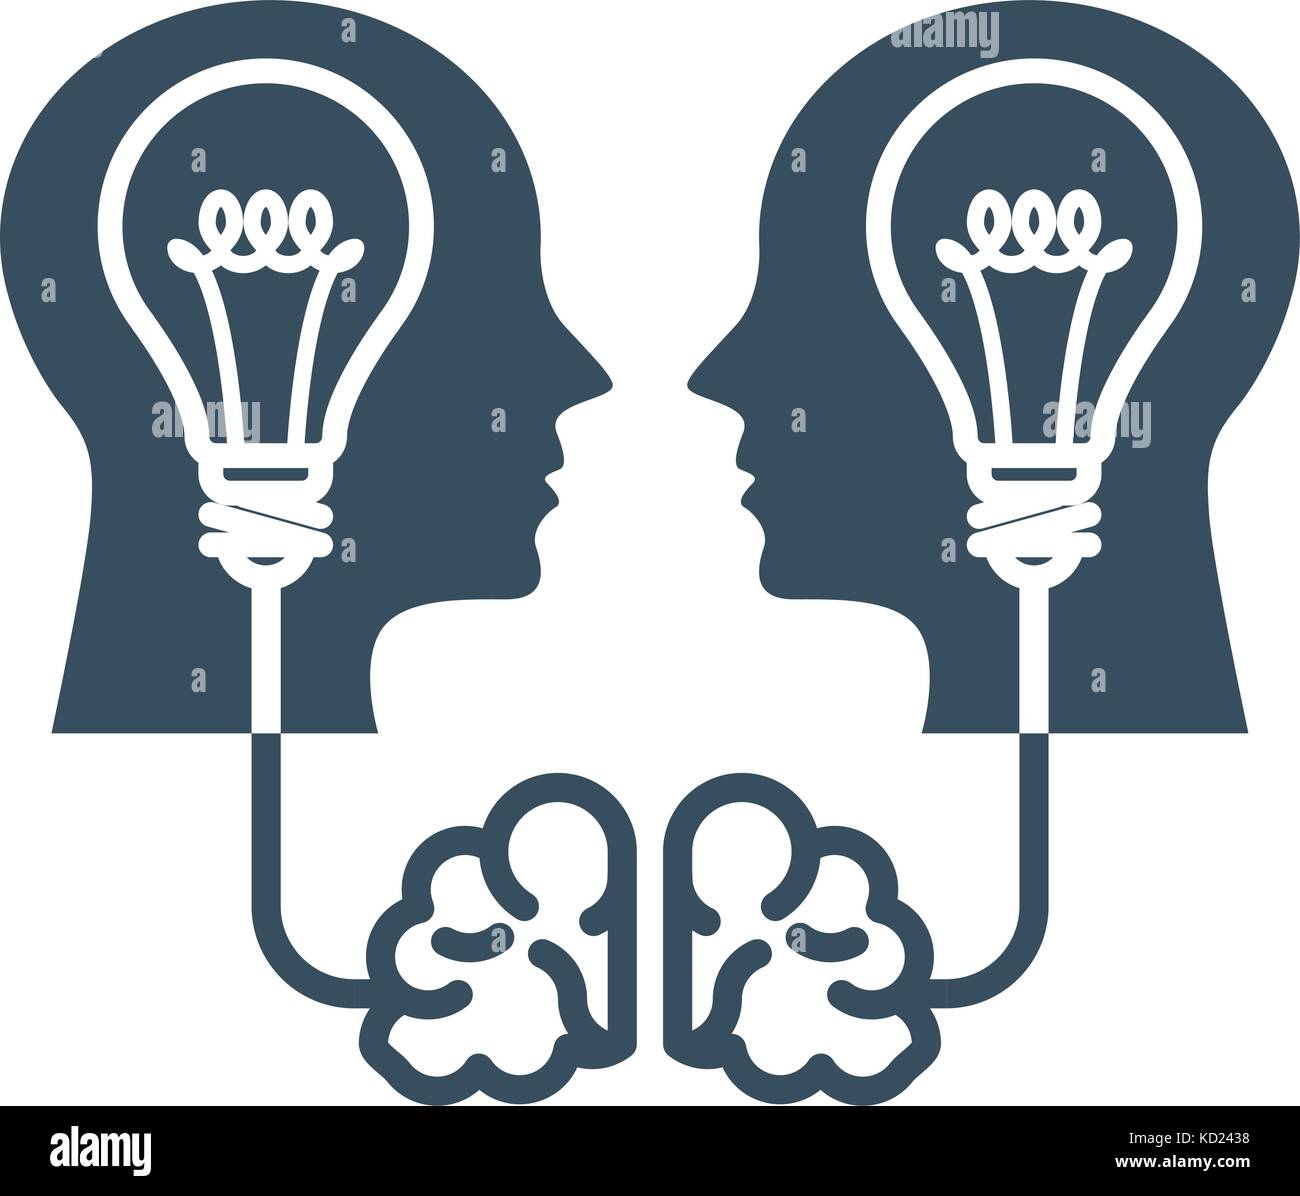 Geistiges Eigentum und Ideen - Kopf mit Glühbirne und Gehirn Stock Vektor